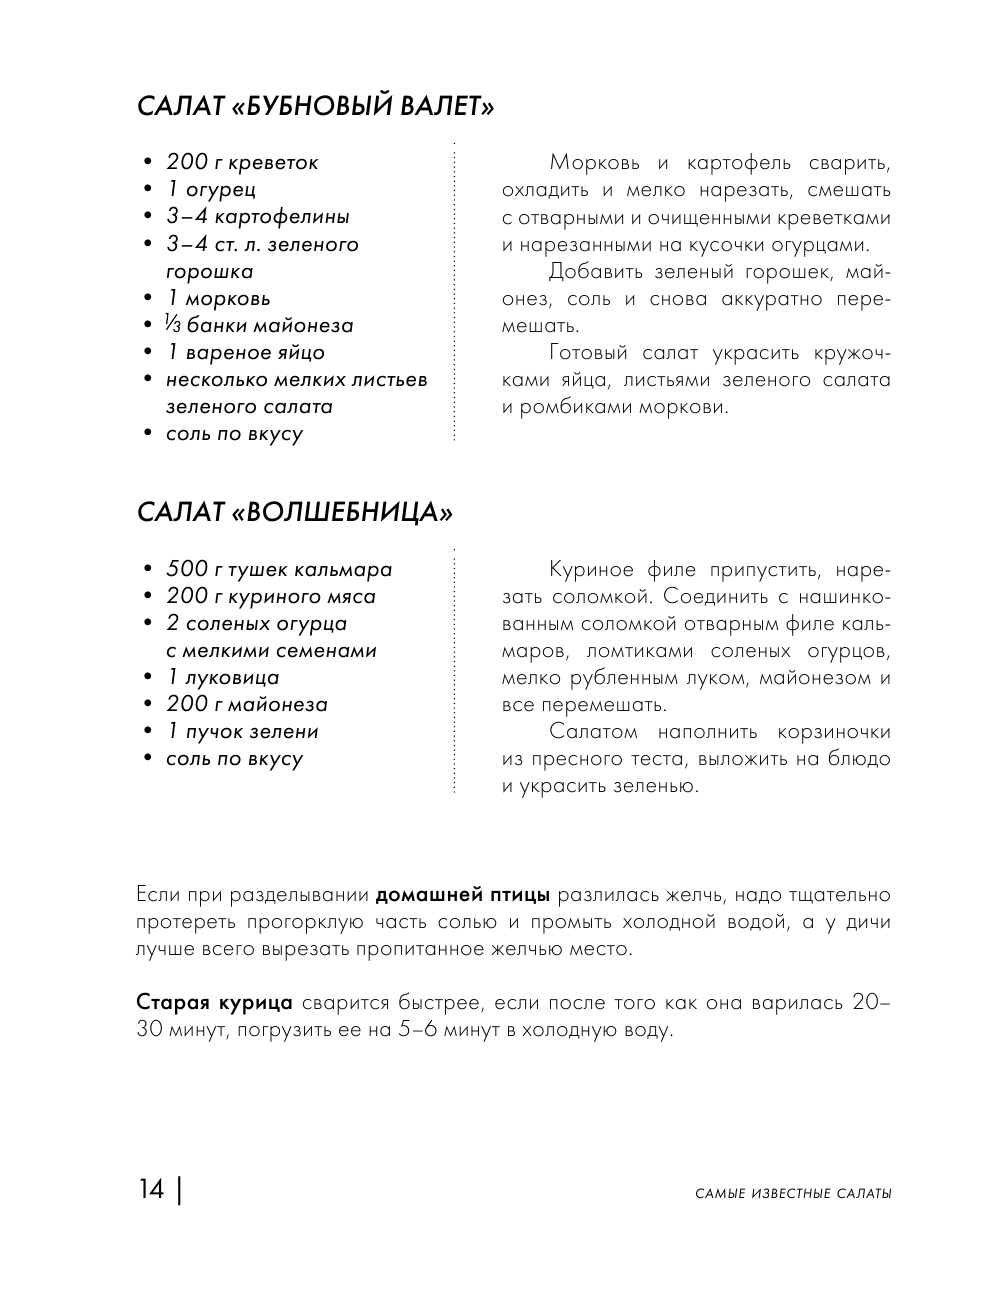 Энциклопедия салатов. Рецепты и рекомендации - фото №16